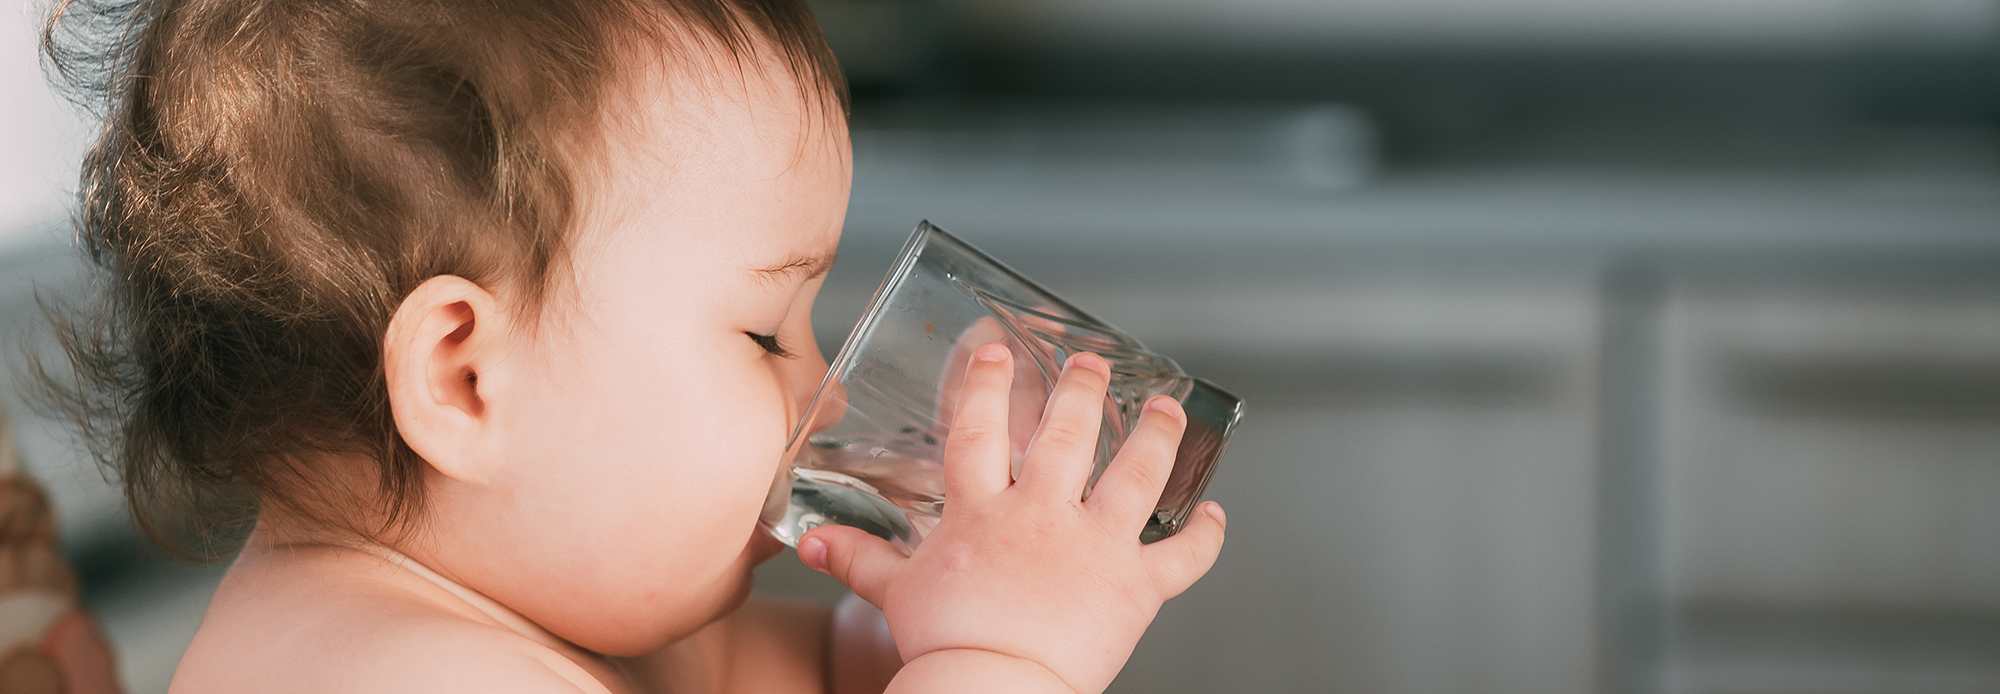 Cuándo empezar a ofrecer agua a los bebés y cuánta? - Edén Agua